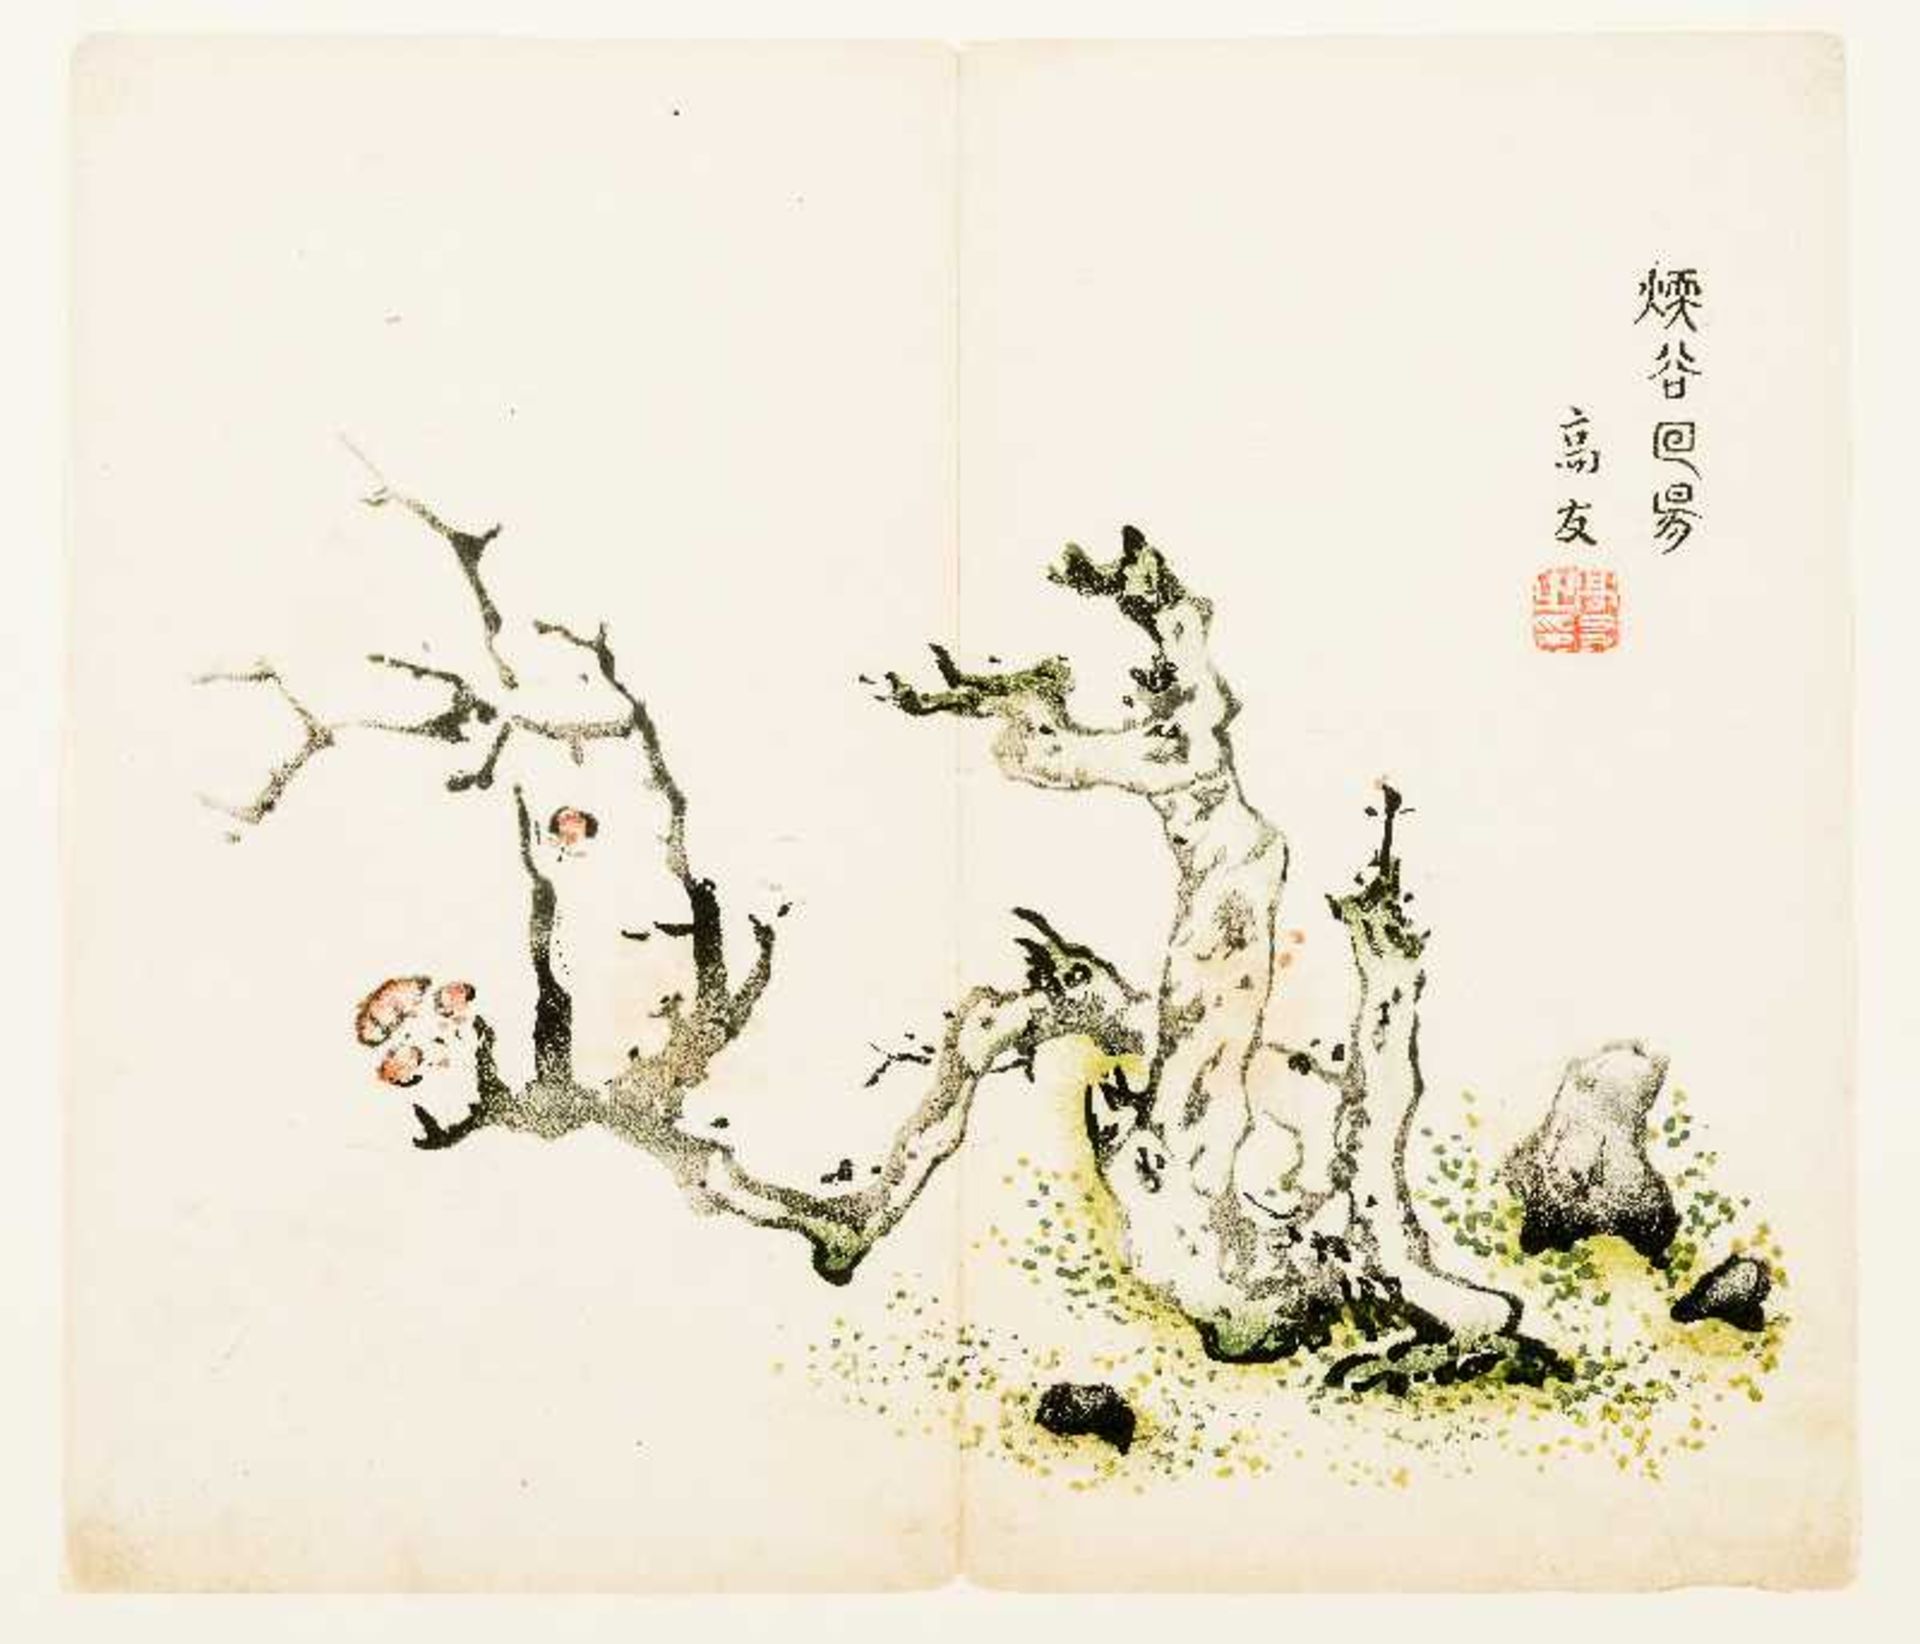 BIZZARRER STEINOriginal-Farbholzschnitt. China, 18. Jh.Originalholzschnitt aus der Sammlung von